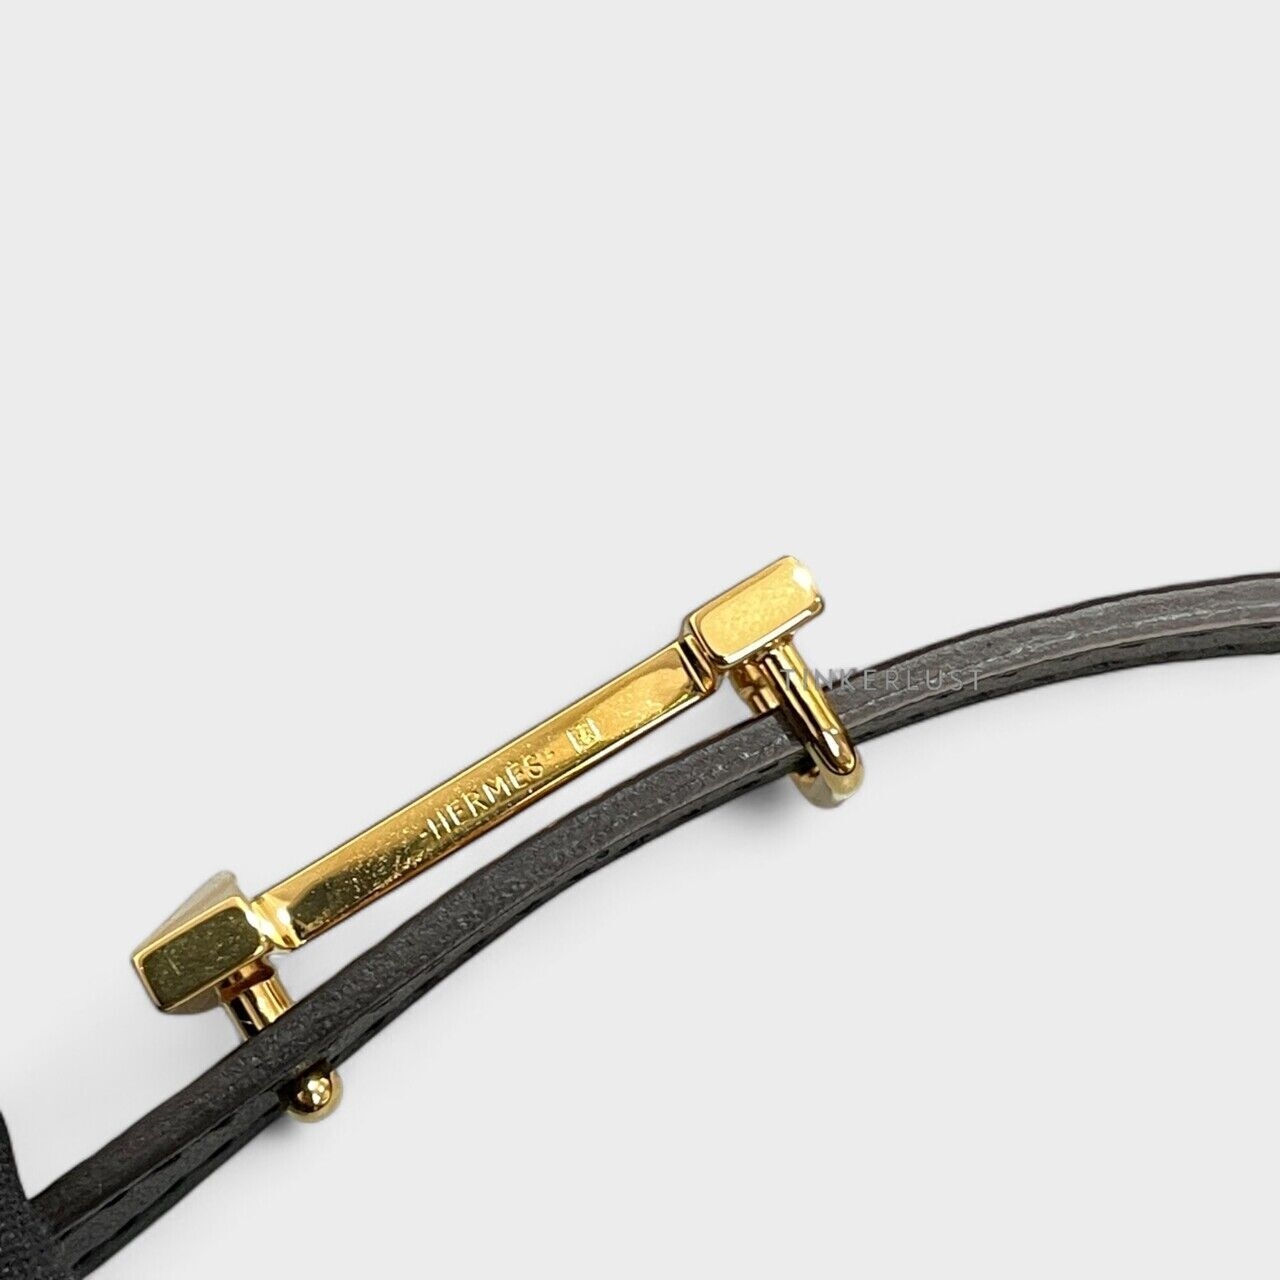 Hermes Focus Belt Buckle Sur Mer Reversible Belt Leather 13 mm